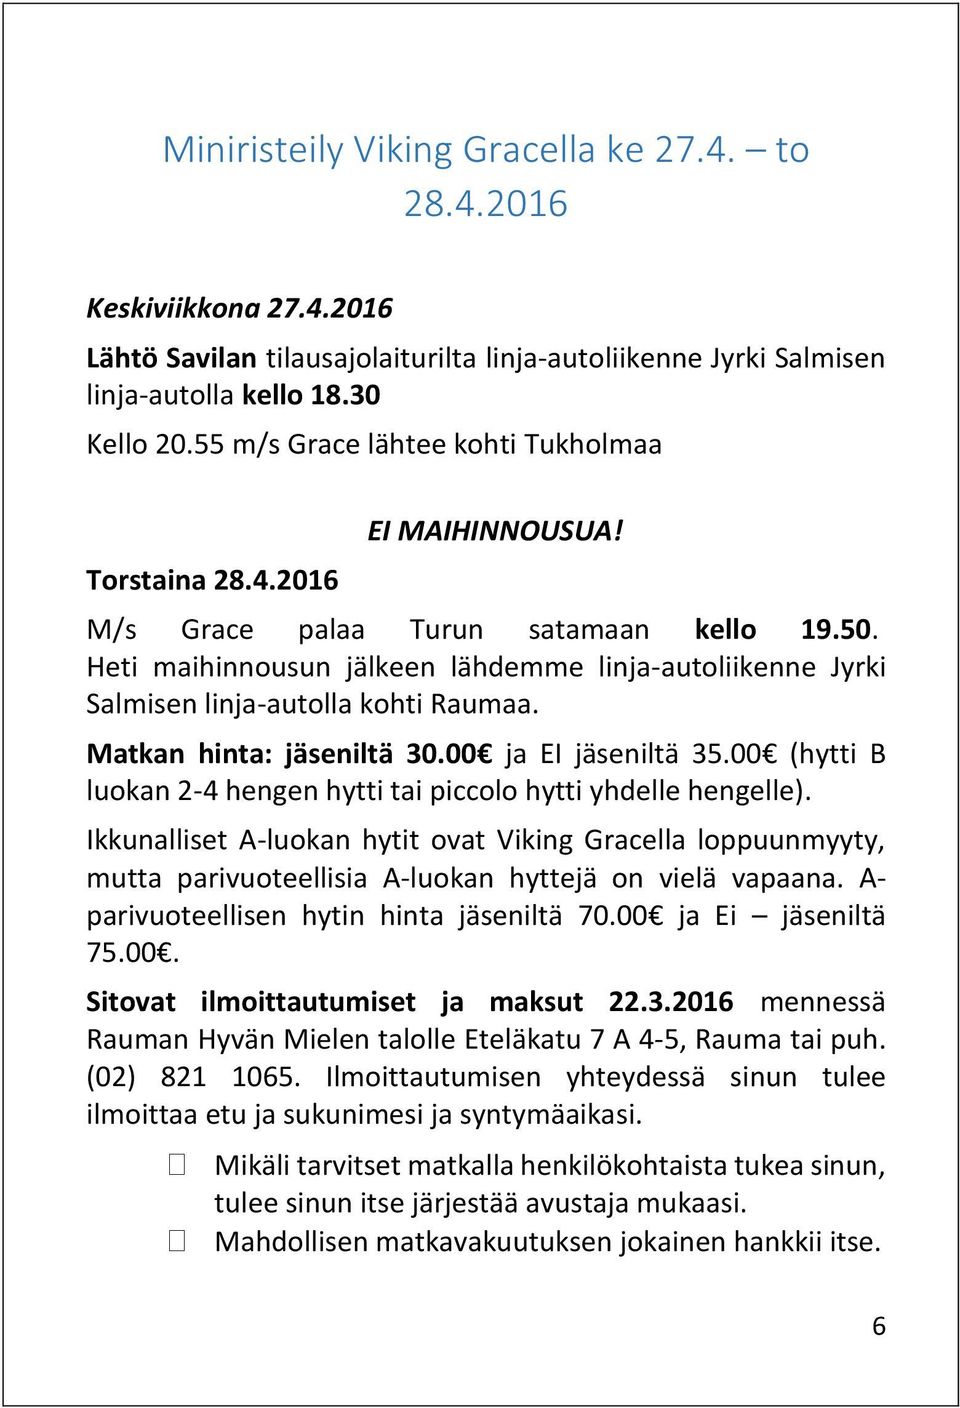 Heti maihinnousun jälkeen lähdemme linja-autoliikenne Jyrki Salmisen linja-autolla kohti Raumaa. Matkan hinta: jäseniltä 30.00 ja EI jäseniltä 35.